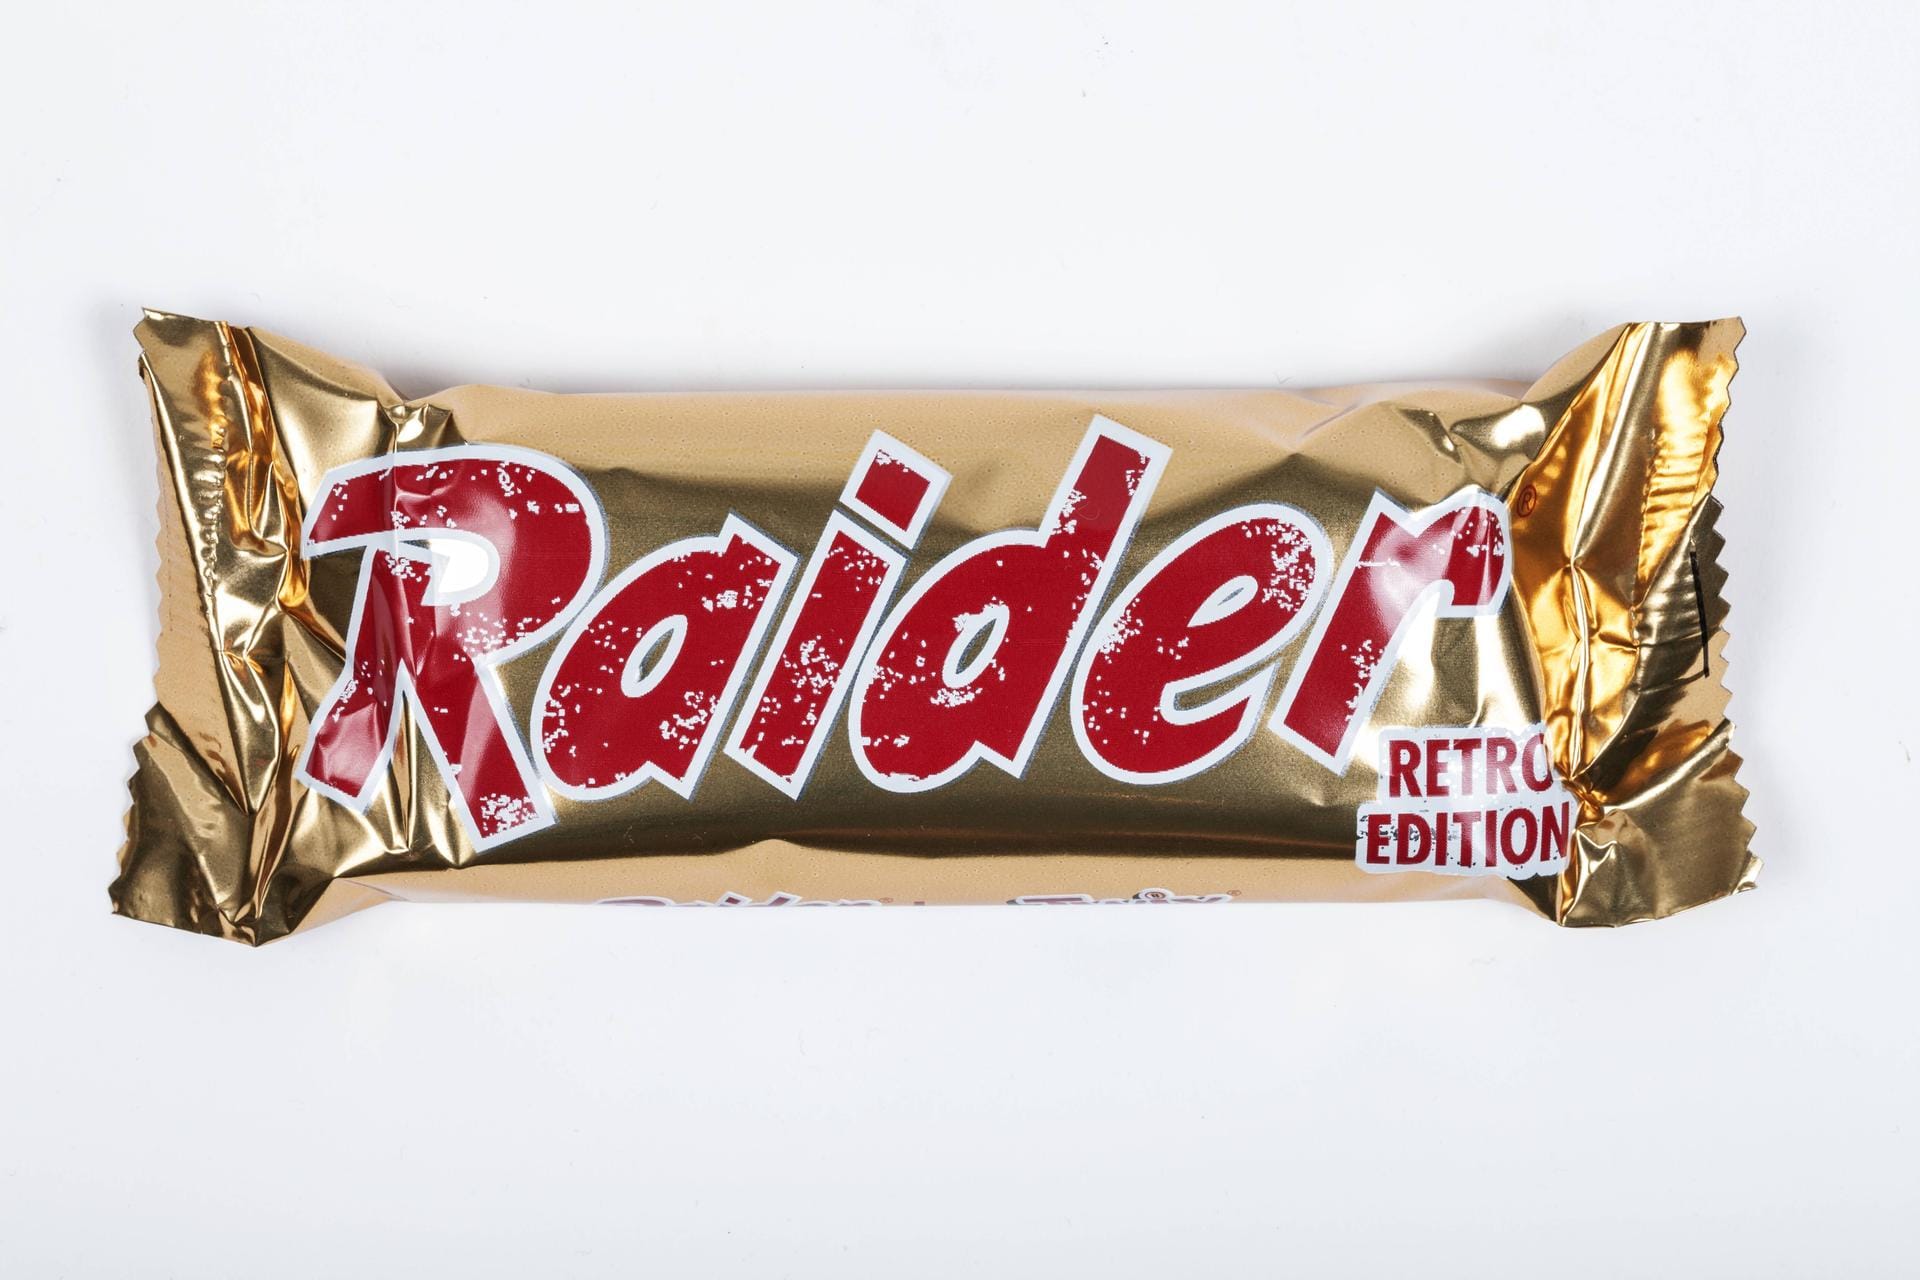 Raider in einer Retro-Edition: Seit 1991 heißt Raider in Deutschland nur noch Twix. Legendär wurde der Spruch: "Raider heißt jetzt Twix, sonst ändert sich nix." Für die Umbenennung gab es mehrere Gründe: So wollte der Konzern den Namen für den Riegel unternehmensweit vereinheitlichen. Auch glaubten die Marketing-Fachleute des Mars-Konzern, die deutsche Übersetzung von "Raider", nämlich "Räuber", könne missverständlich sein.